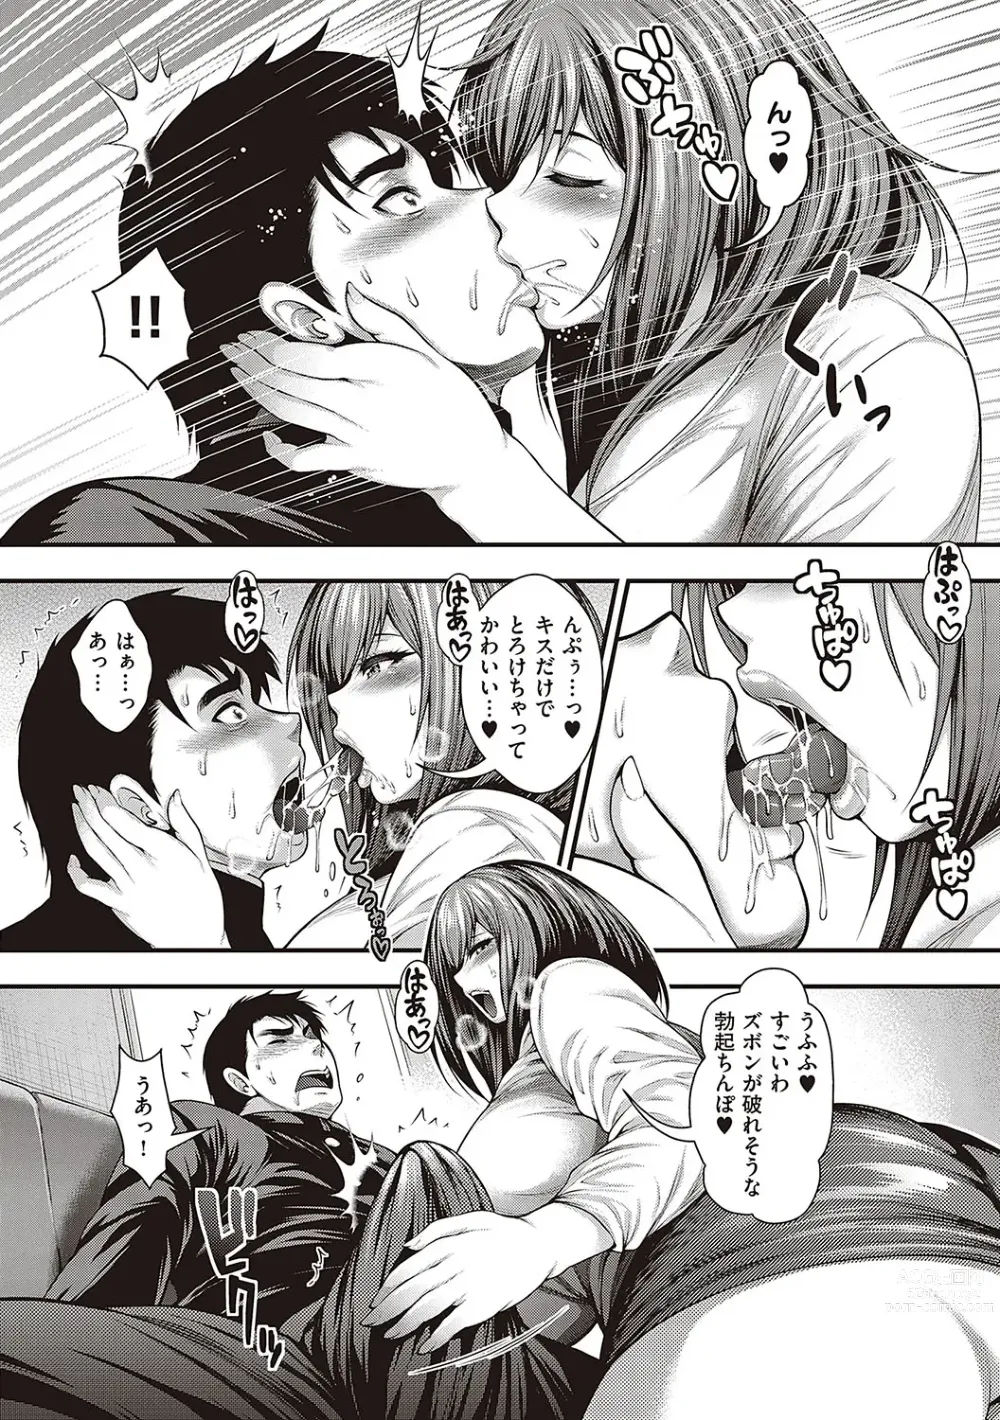 Page 9 of manga Arigatou, Kami Chichi.